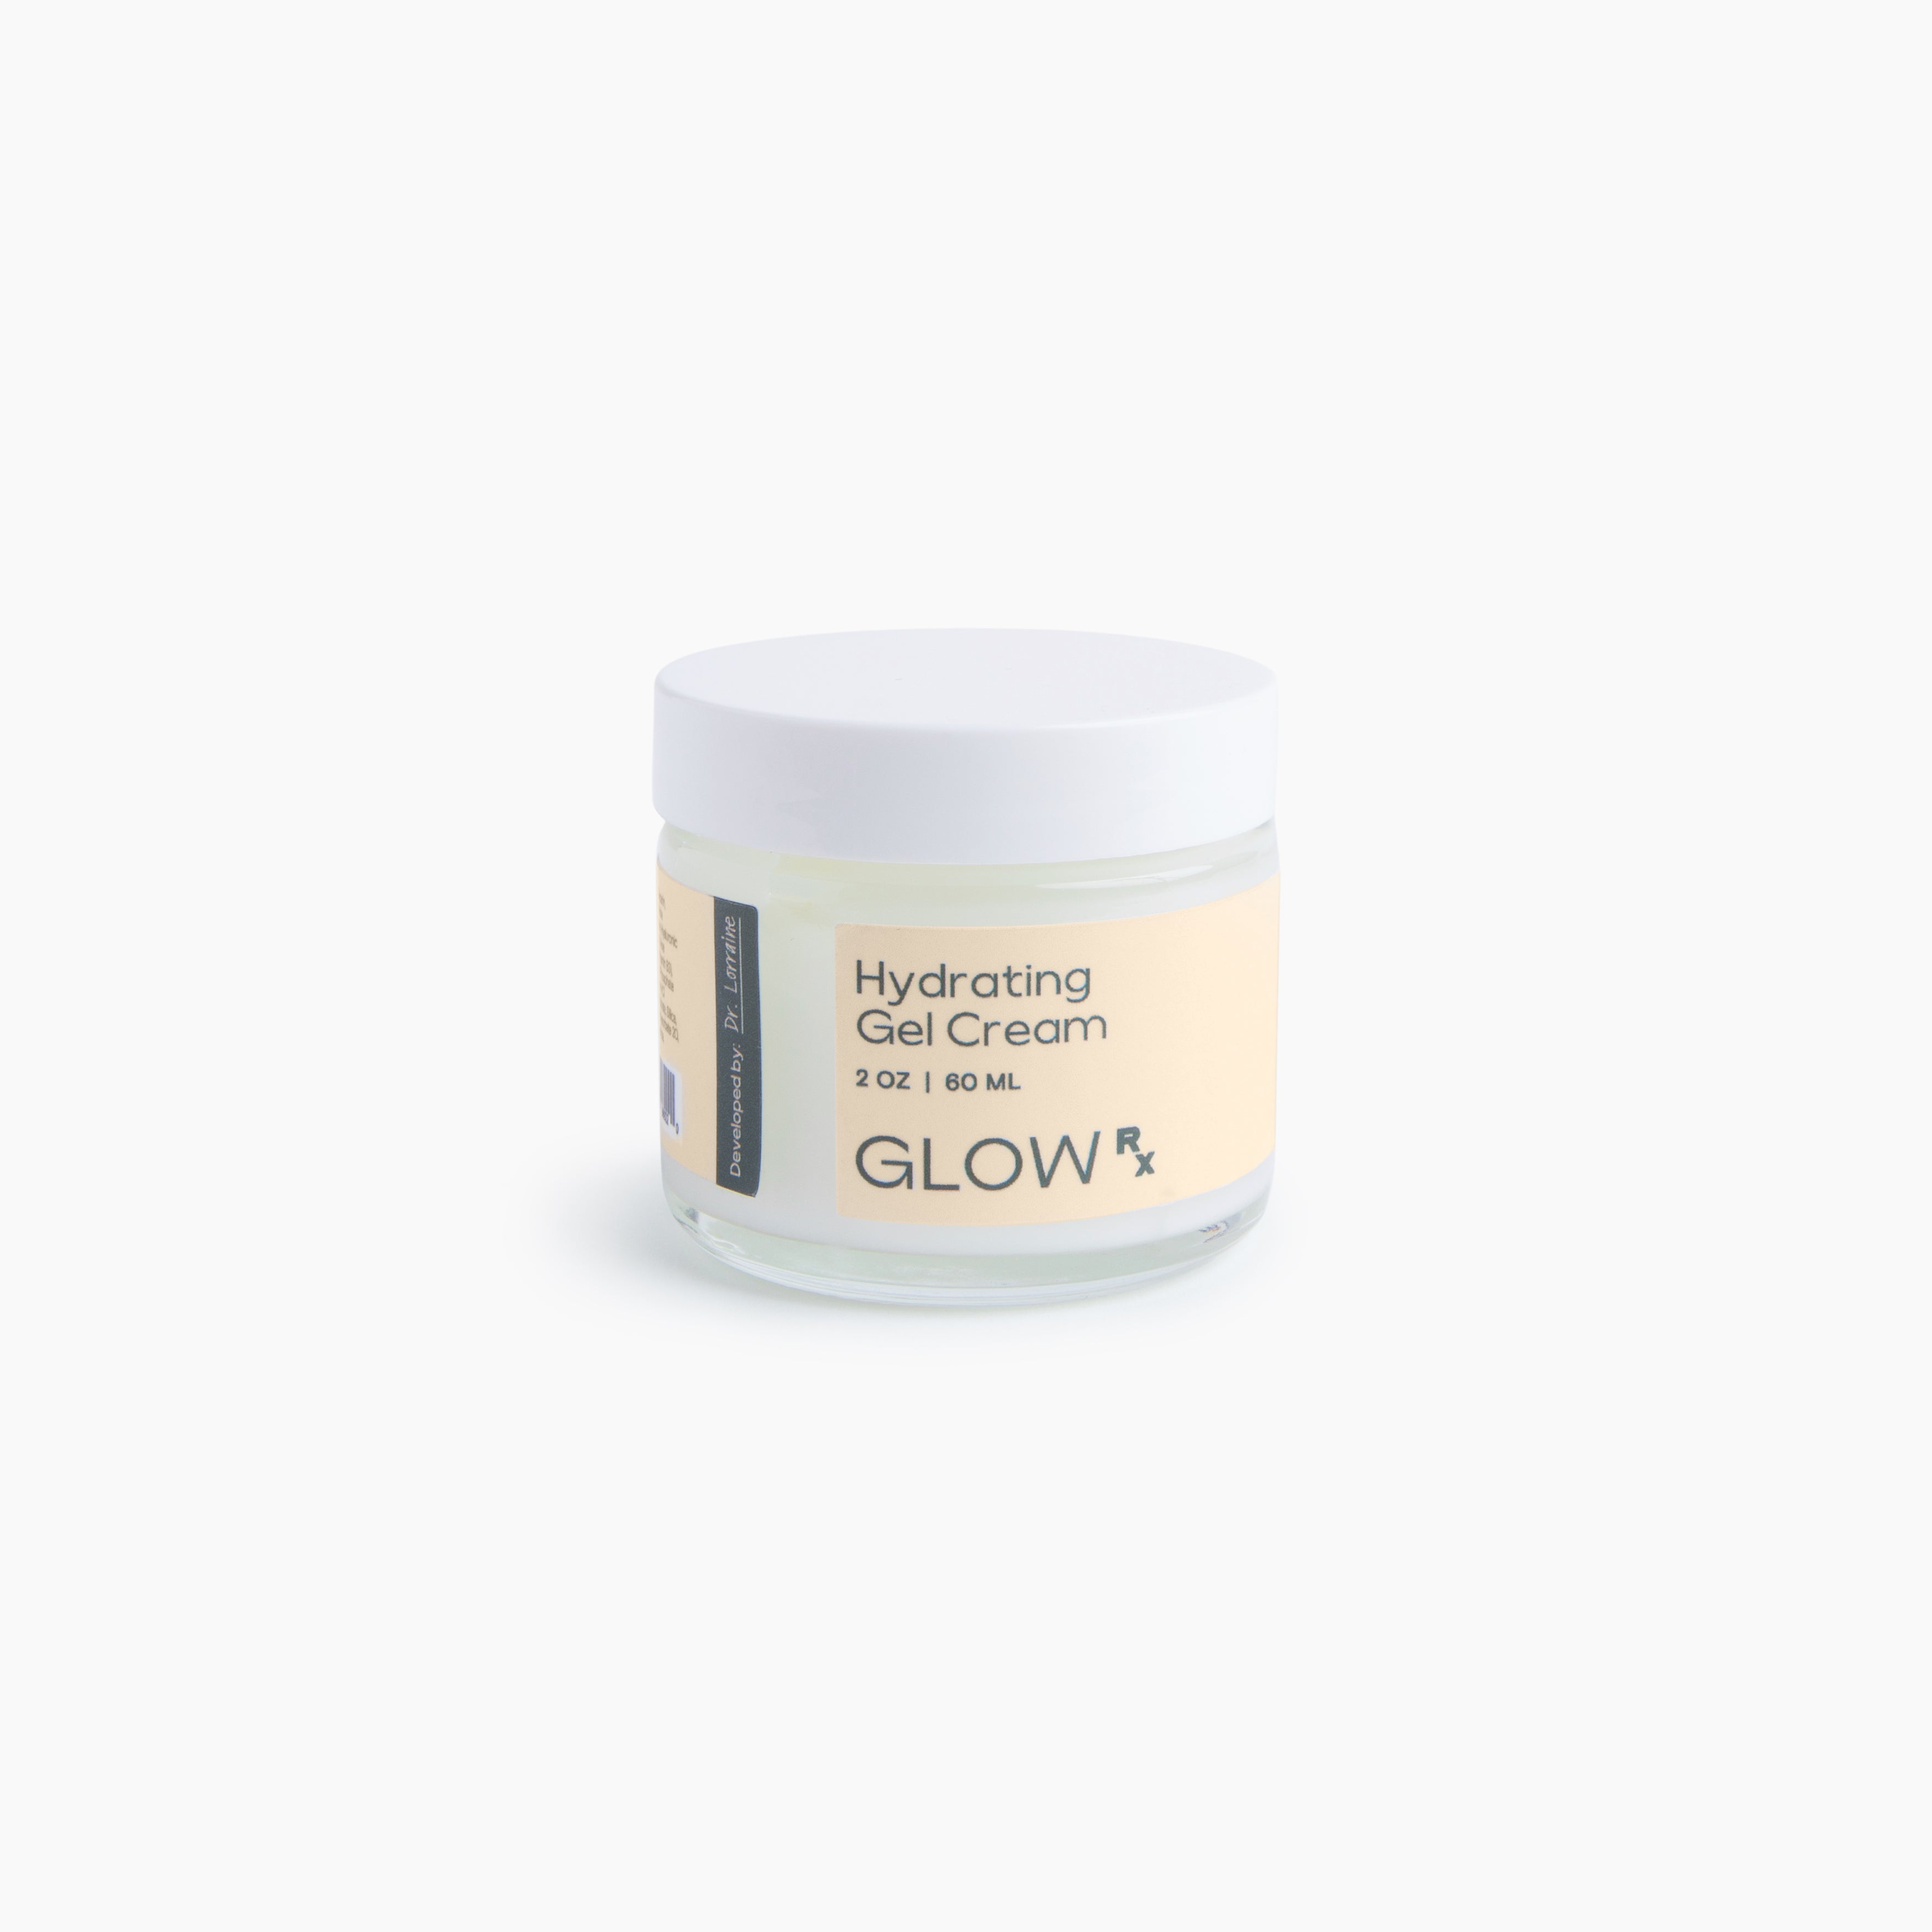 GlowRx Hydrating Gel Cream